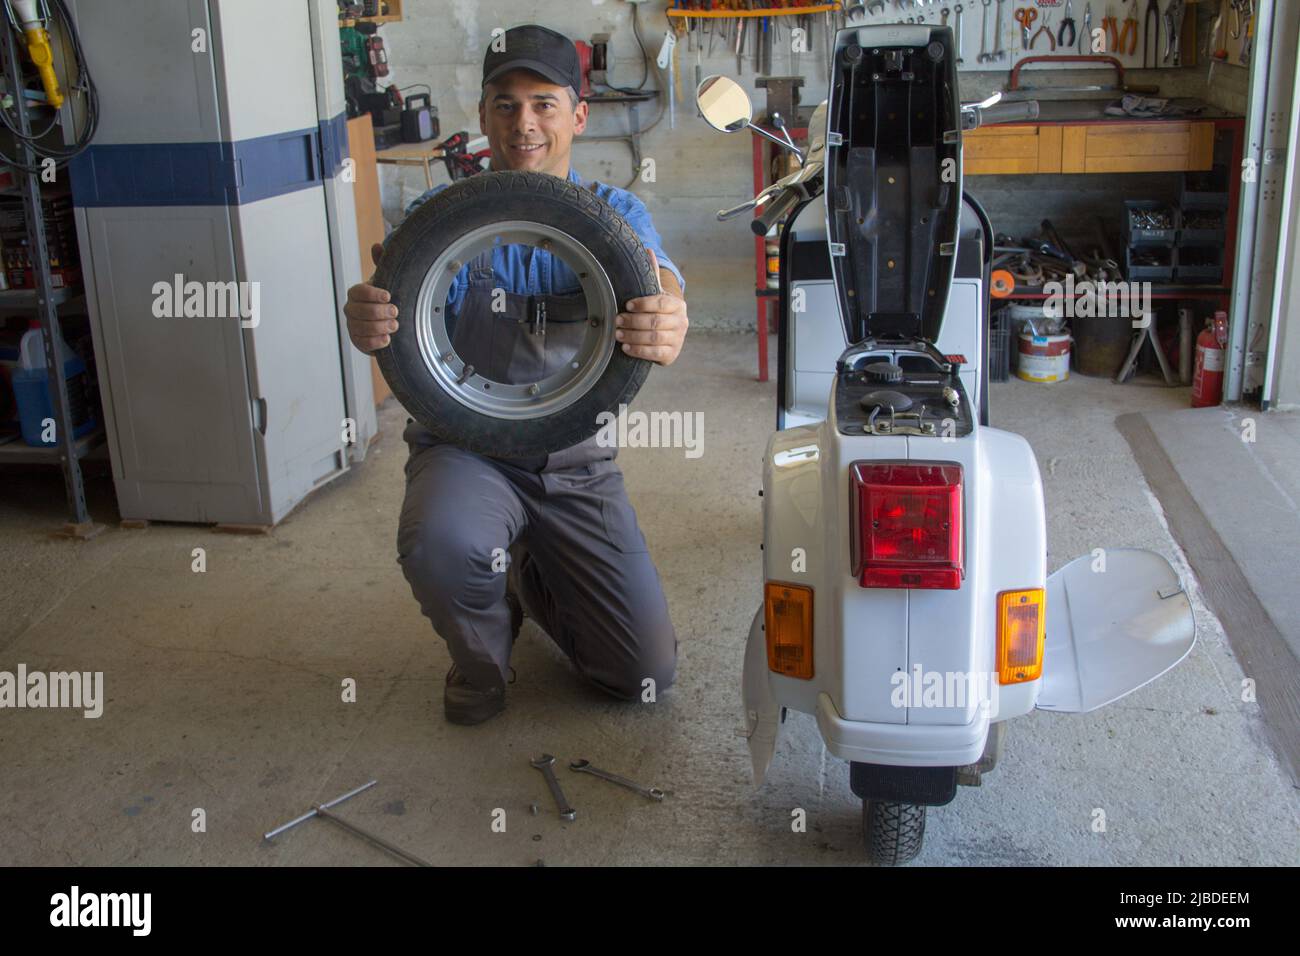 Immagine di un meccanico sorridente nella sua officina che tiene una ruota della motocicletta che sta riparando. Foto Stock